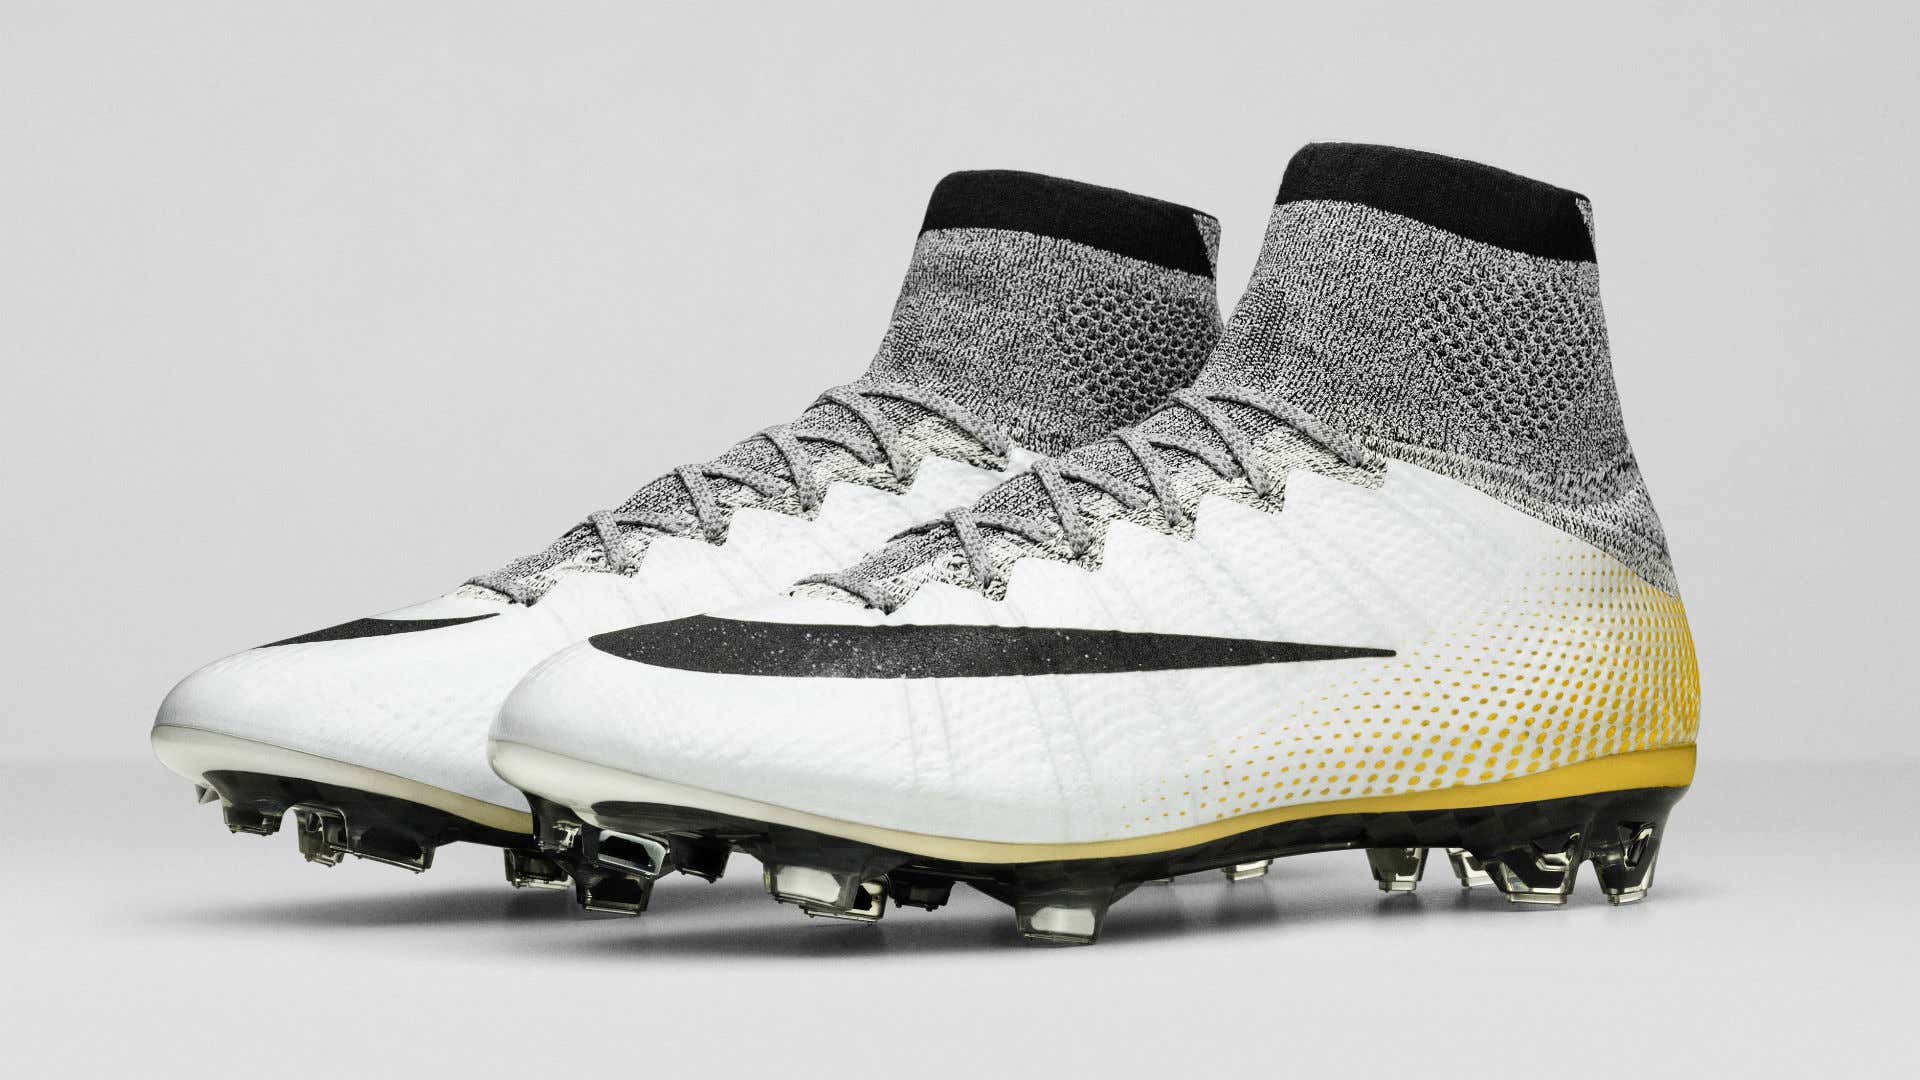 roto Finito Renacimiento Nike rinde tributo a Cristiano Ronaldo con las Mercurial Superfly CR7 |  Goal.com